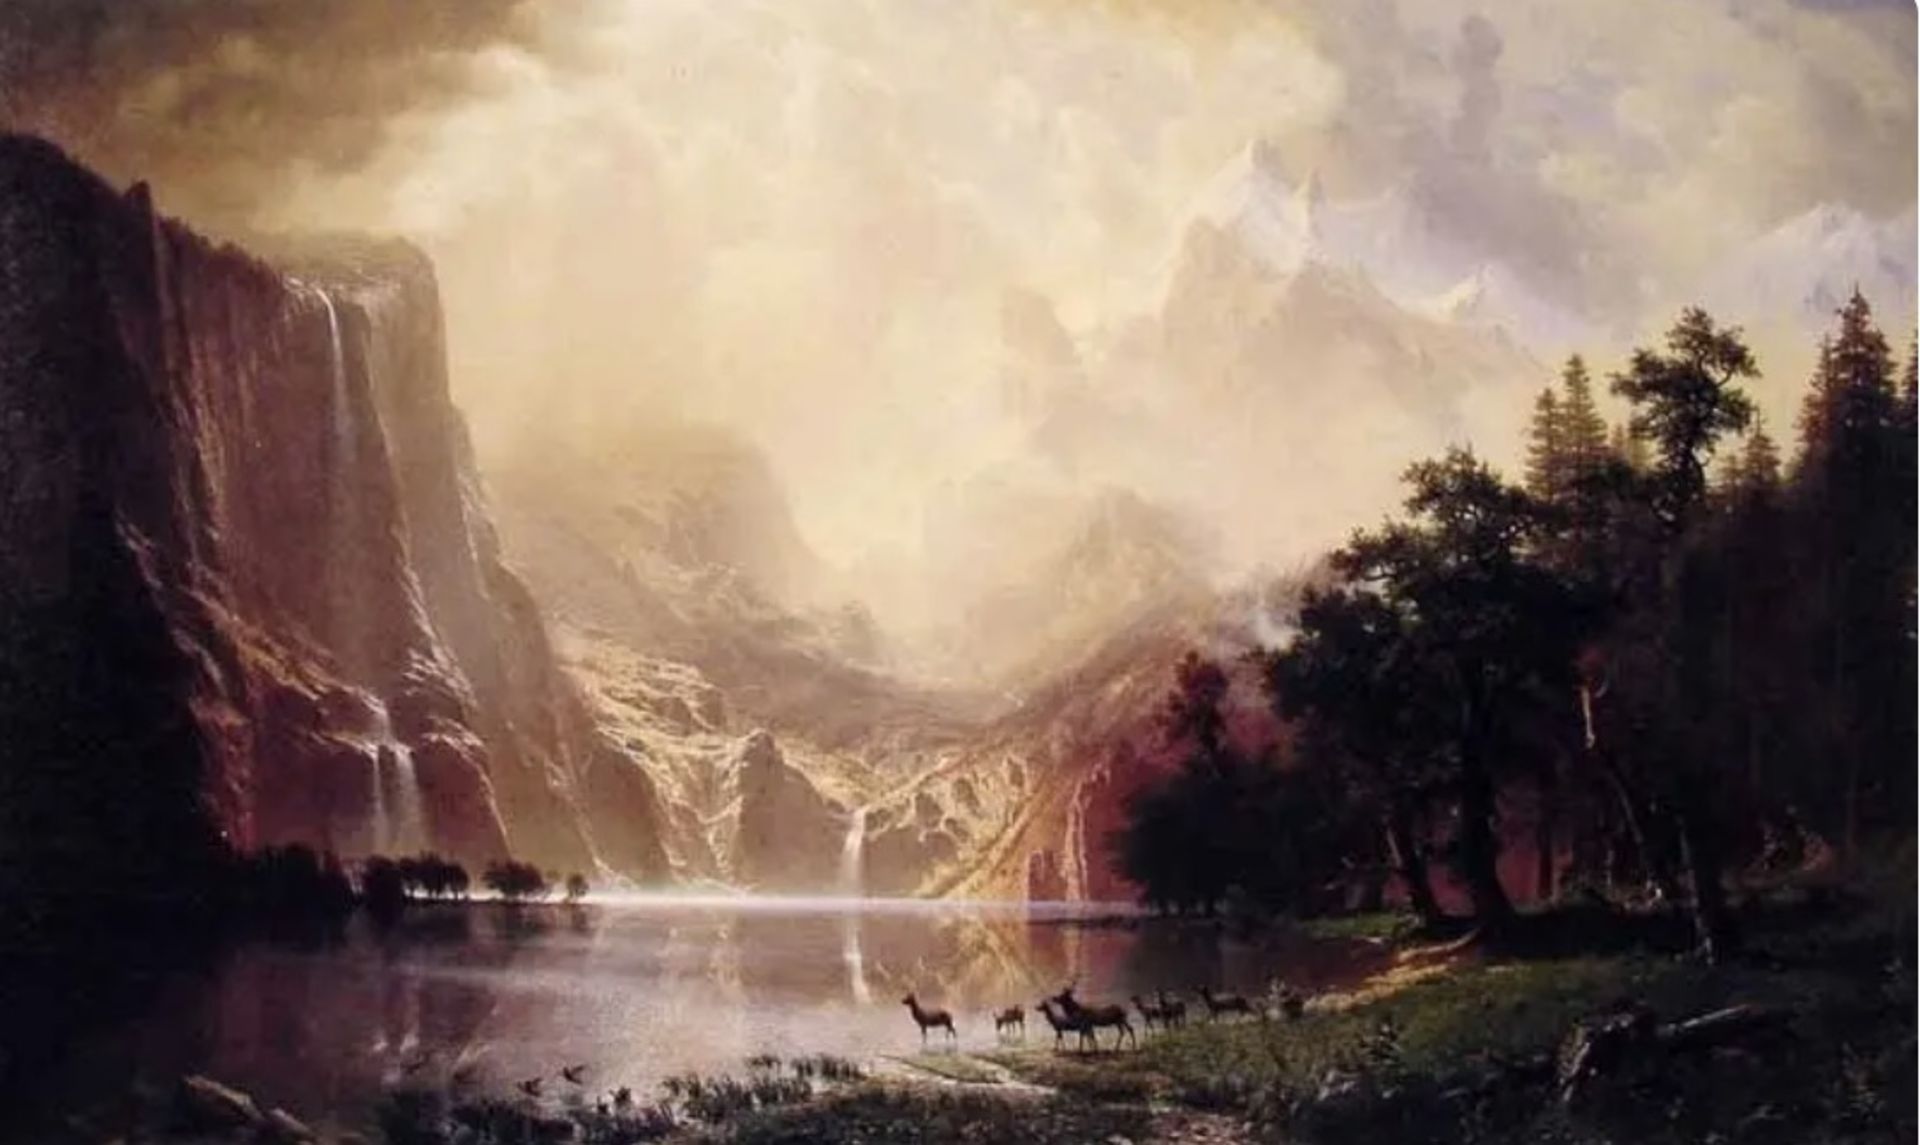 Albert Bierstadt "Sierra Nevada Morning, 1870" Painting